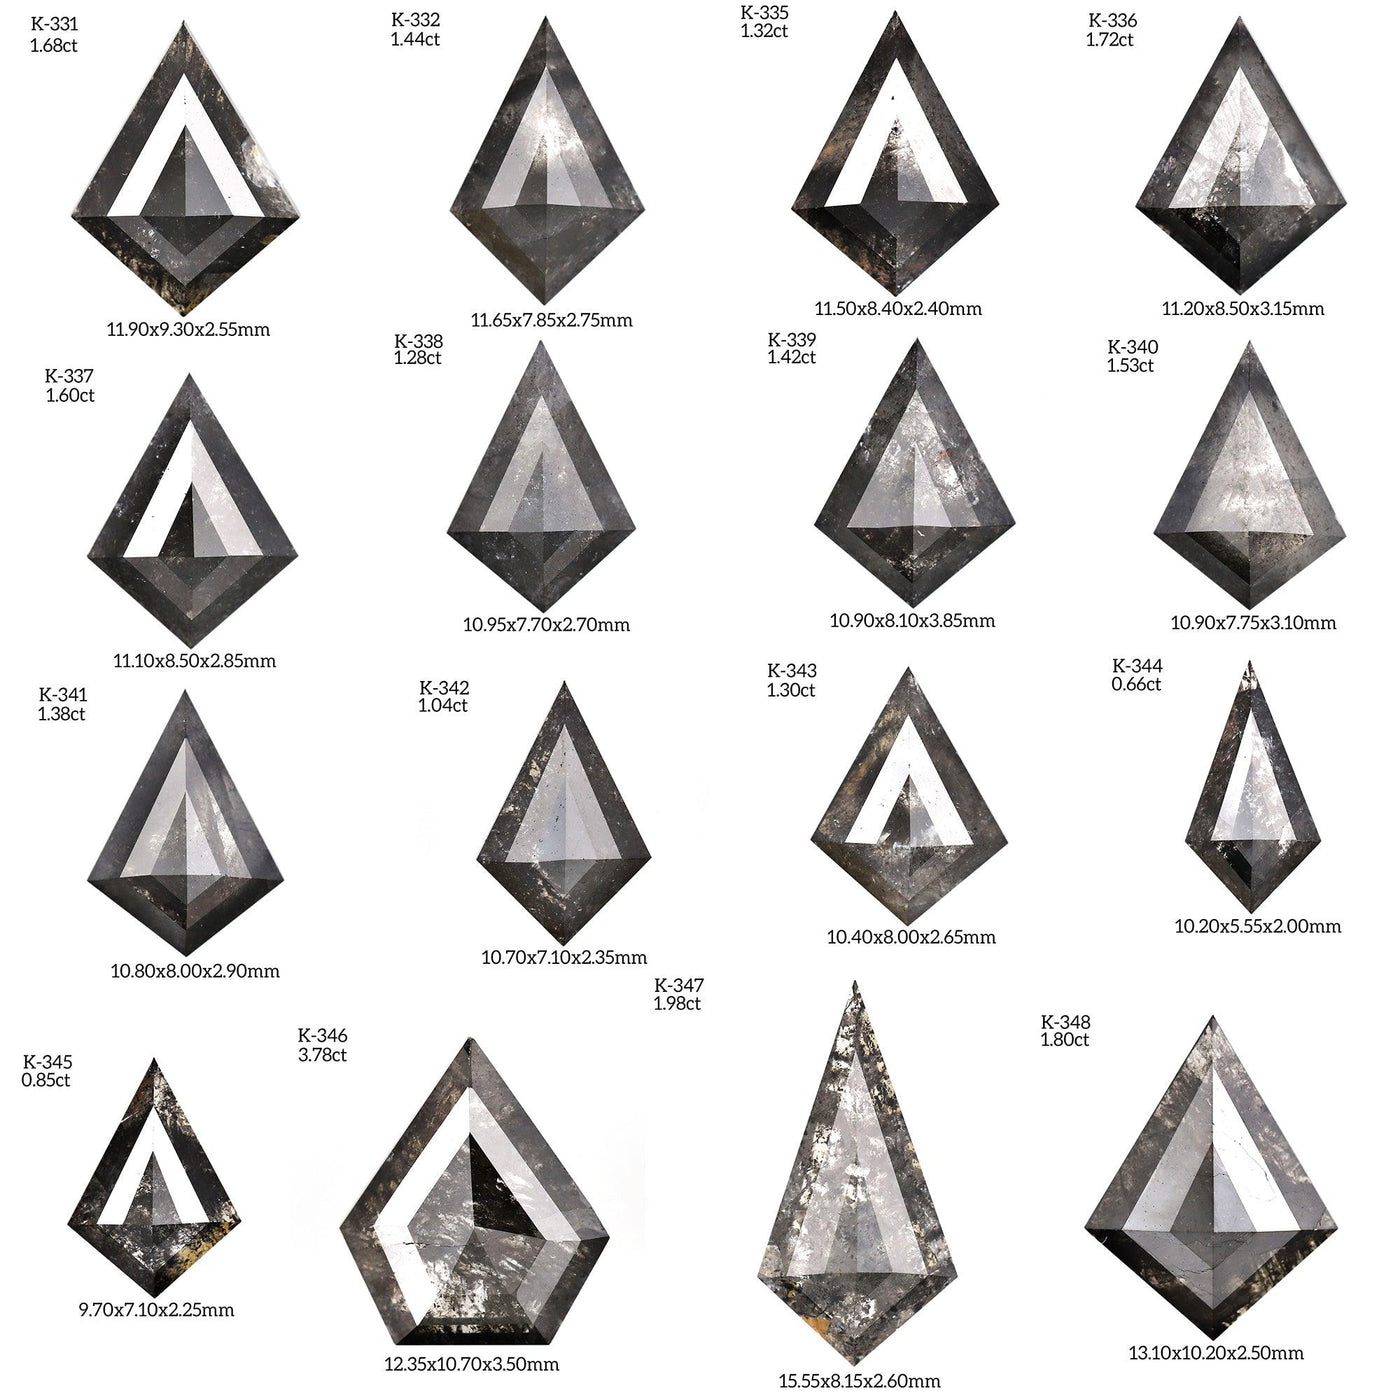 K349 - Salt and pepper kite diamond